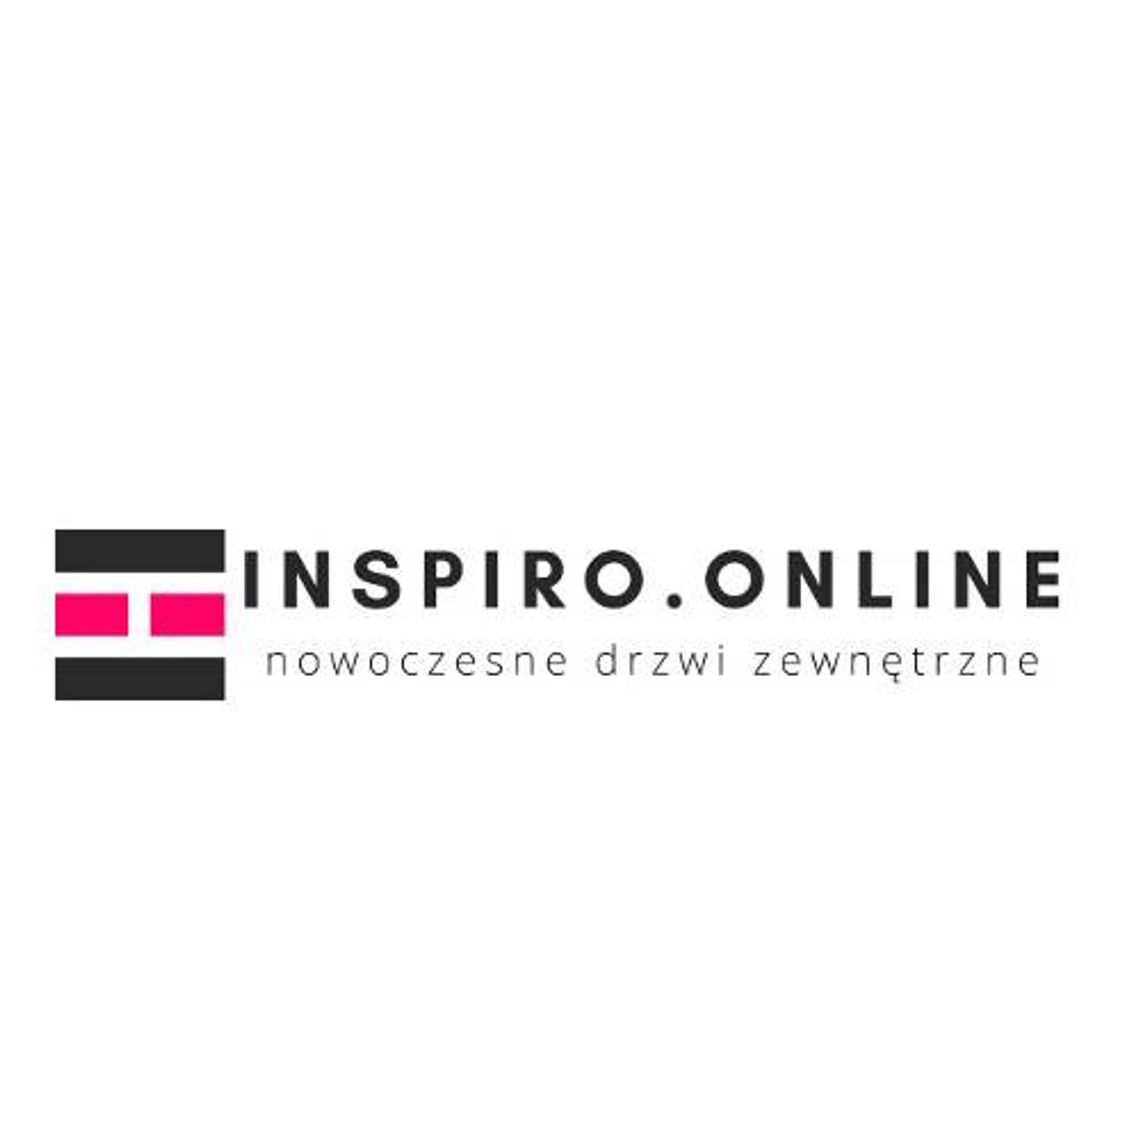 Inspiro.Online - nowoczesne drzwi zewnętrzne